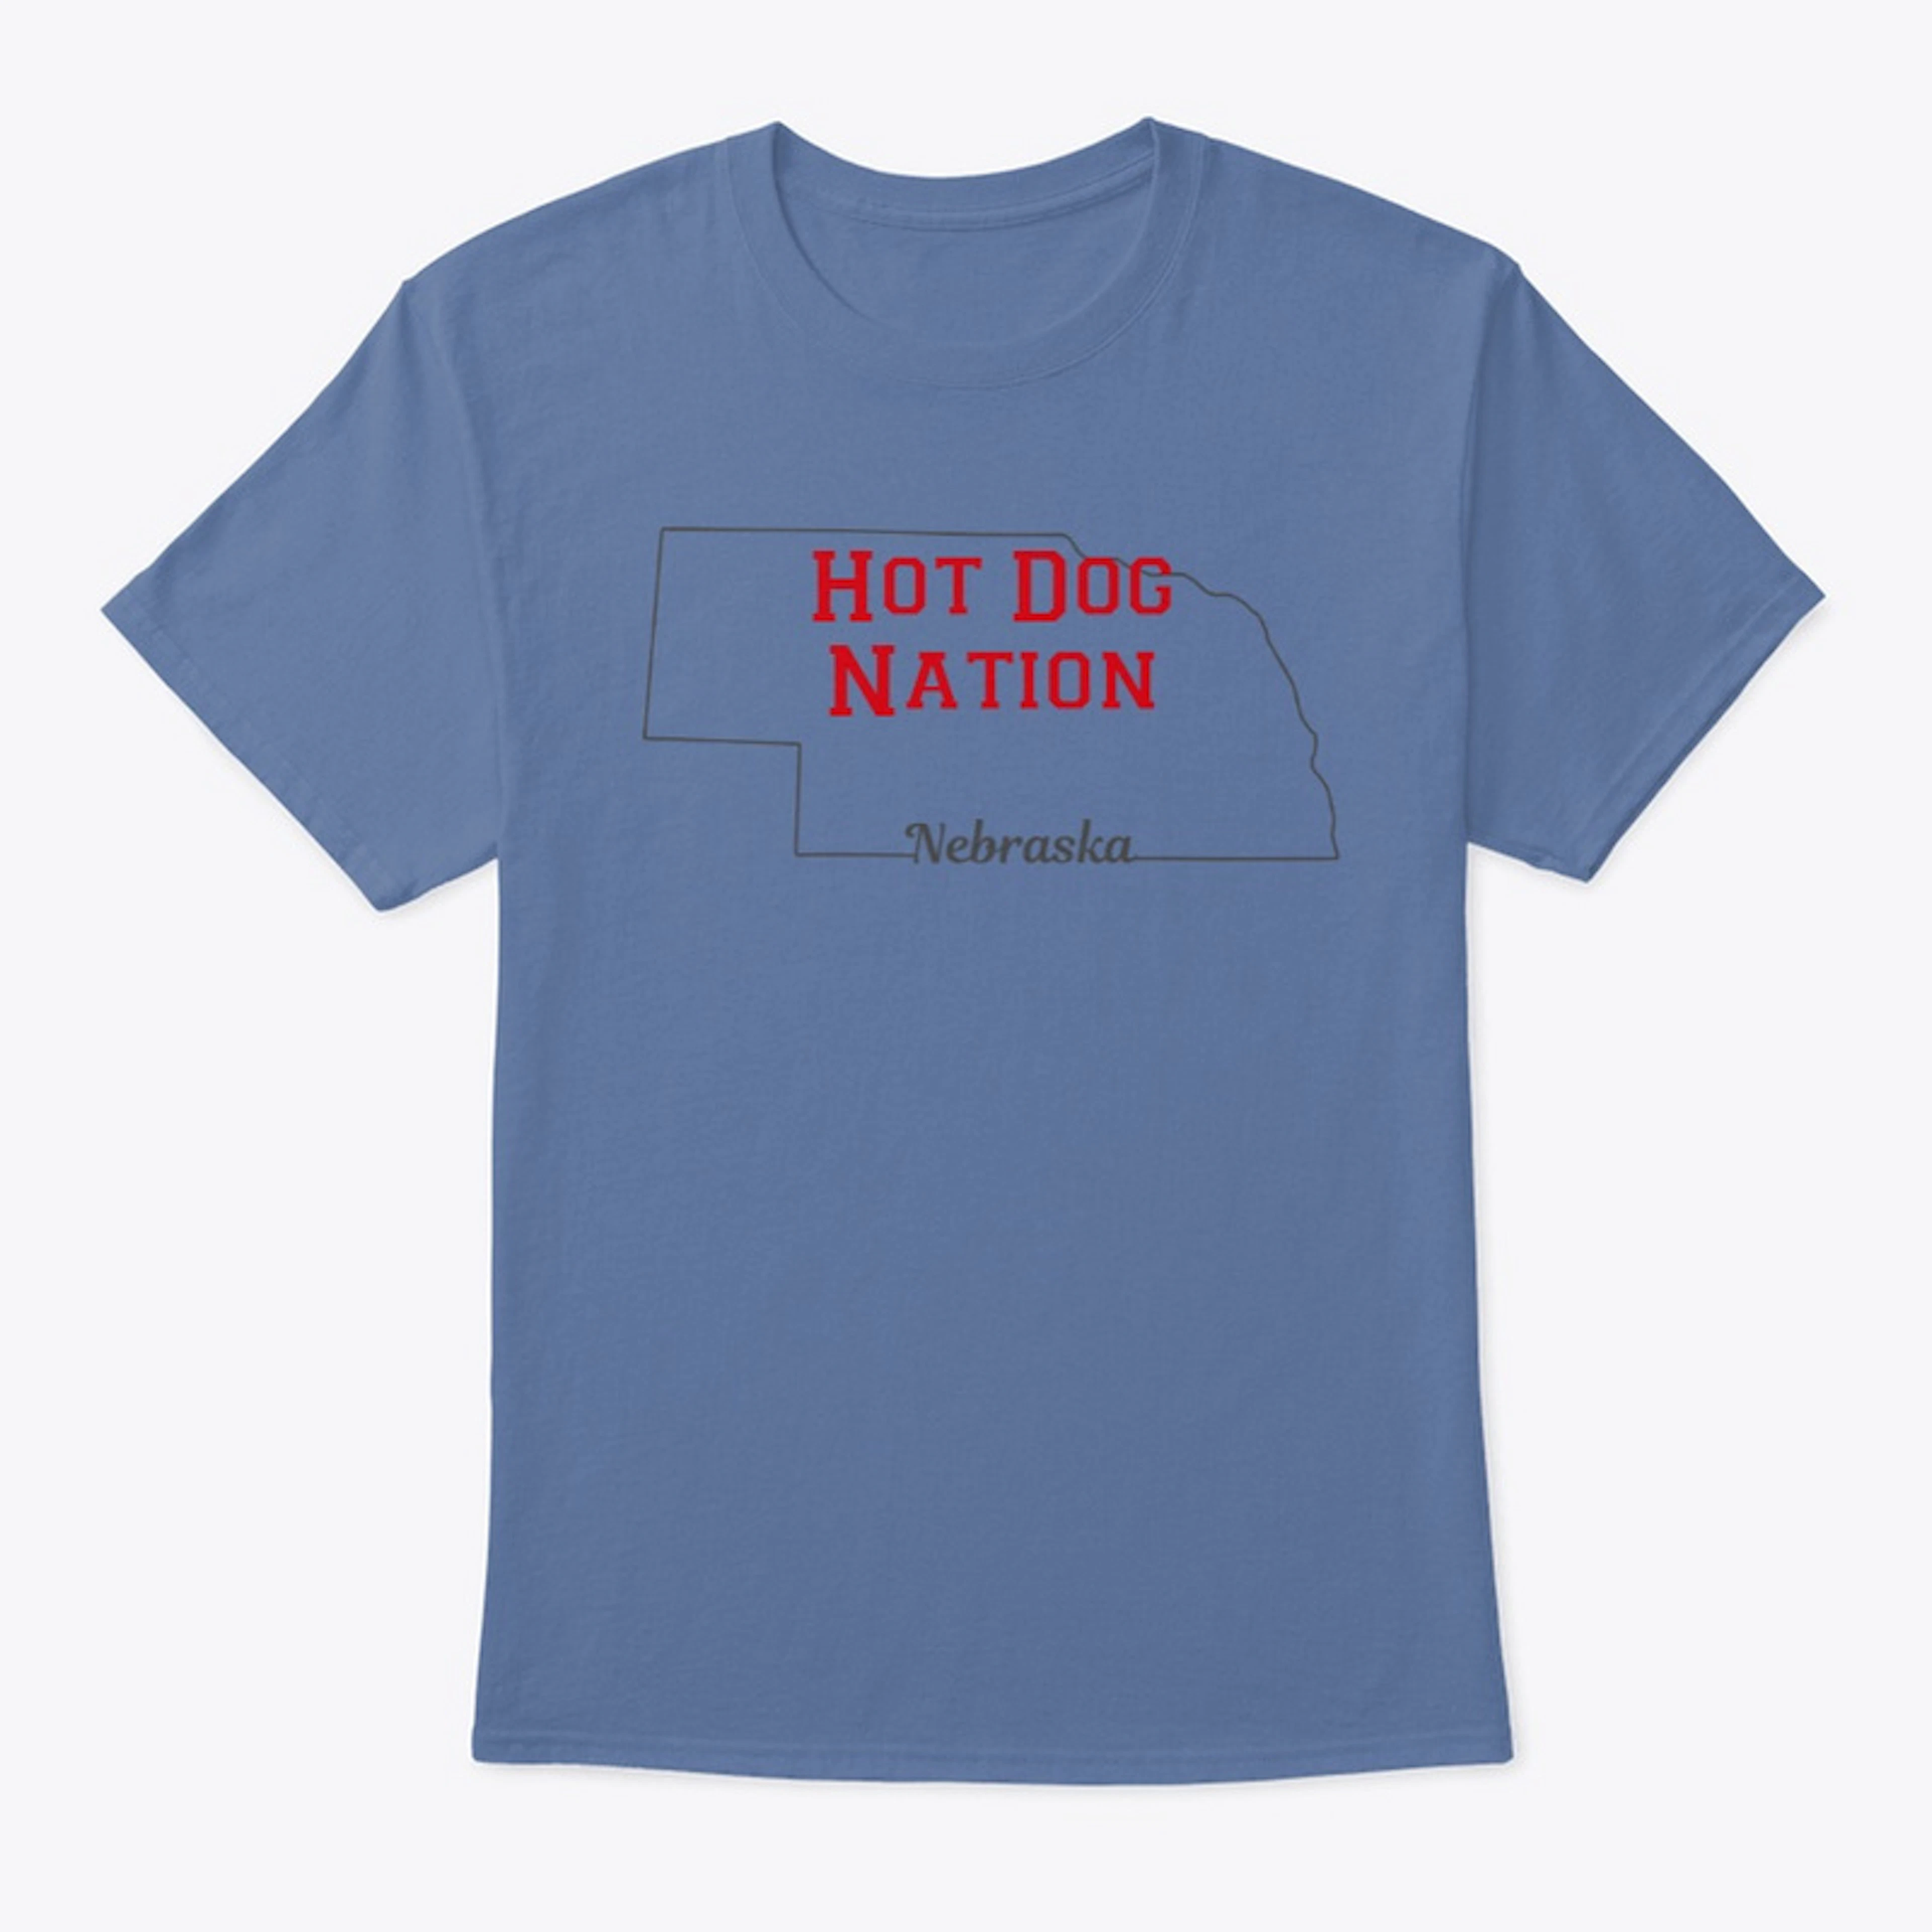 Hot Dog Nation - Nebraska